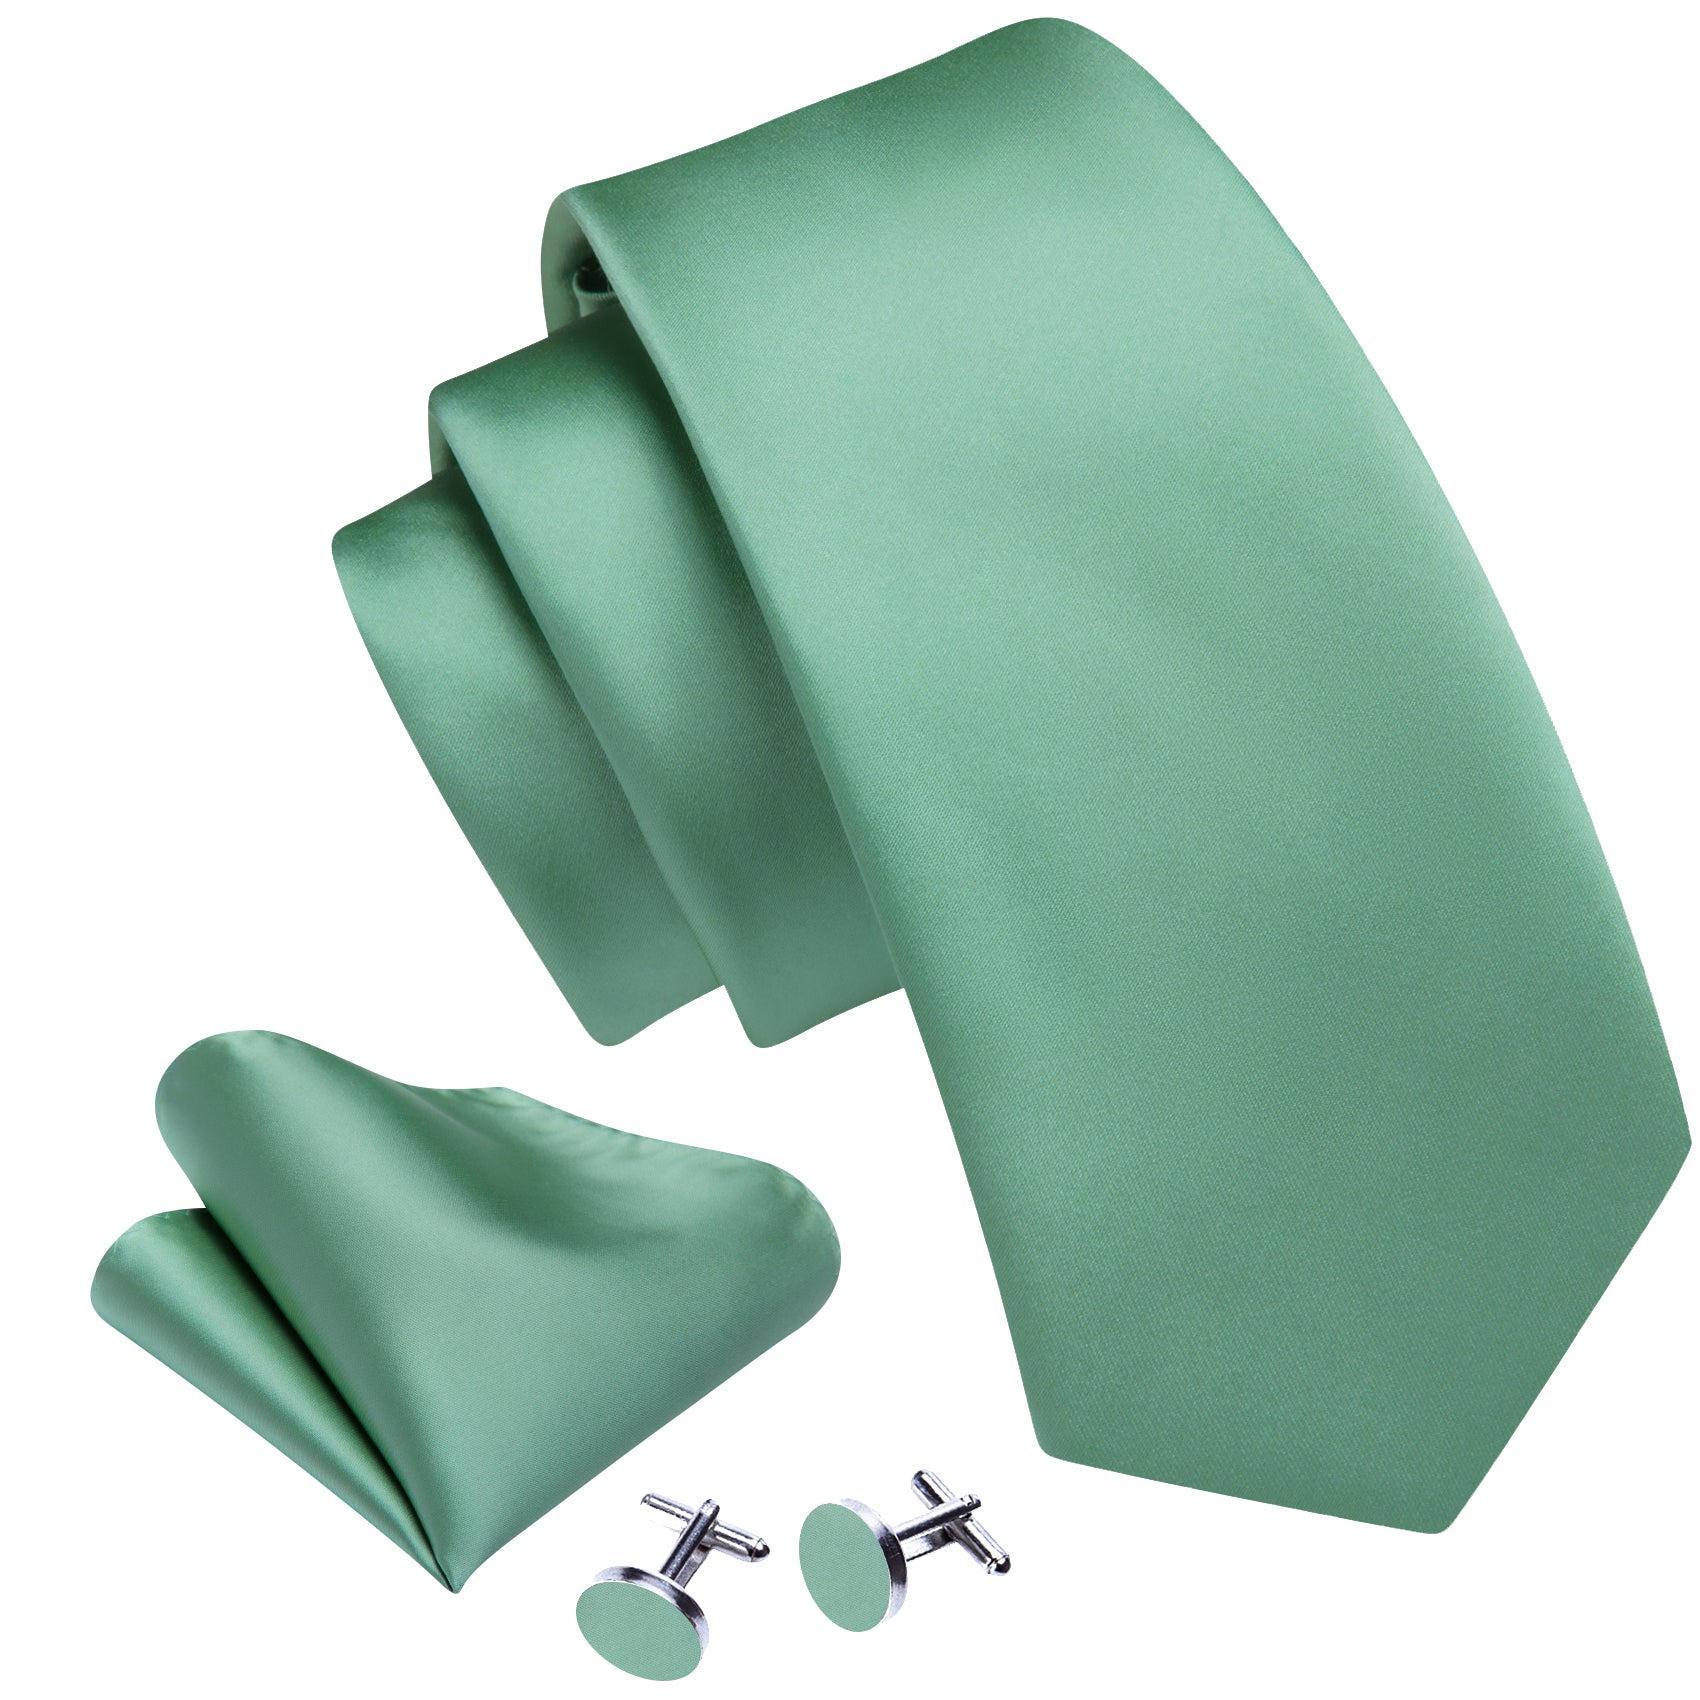 Barry Wang Men's Tie Turquoise Green Solid Silk Tie Handkerchief Cufflinks Set